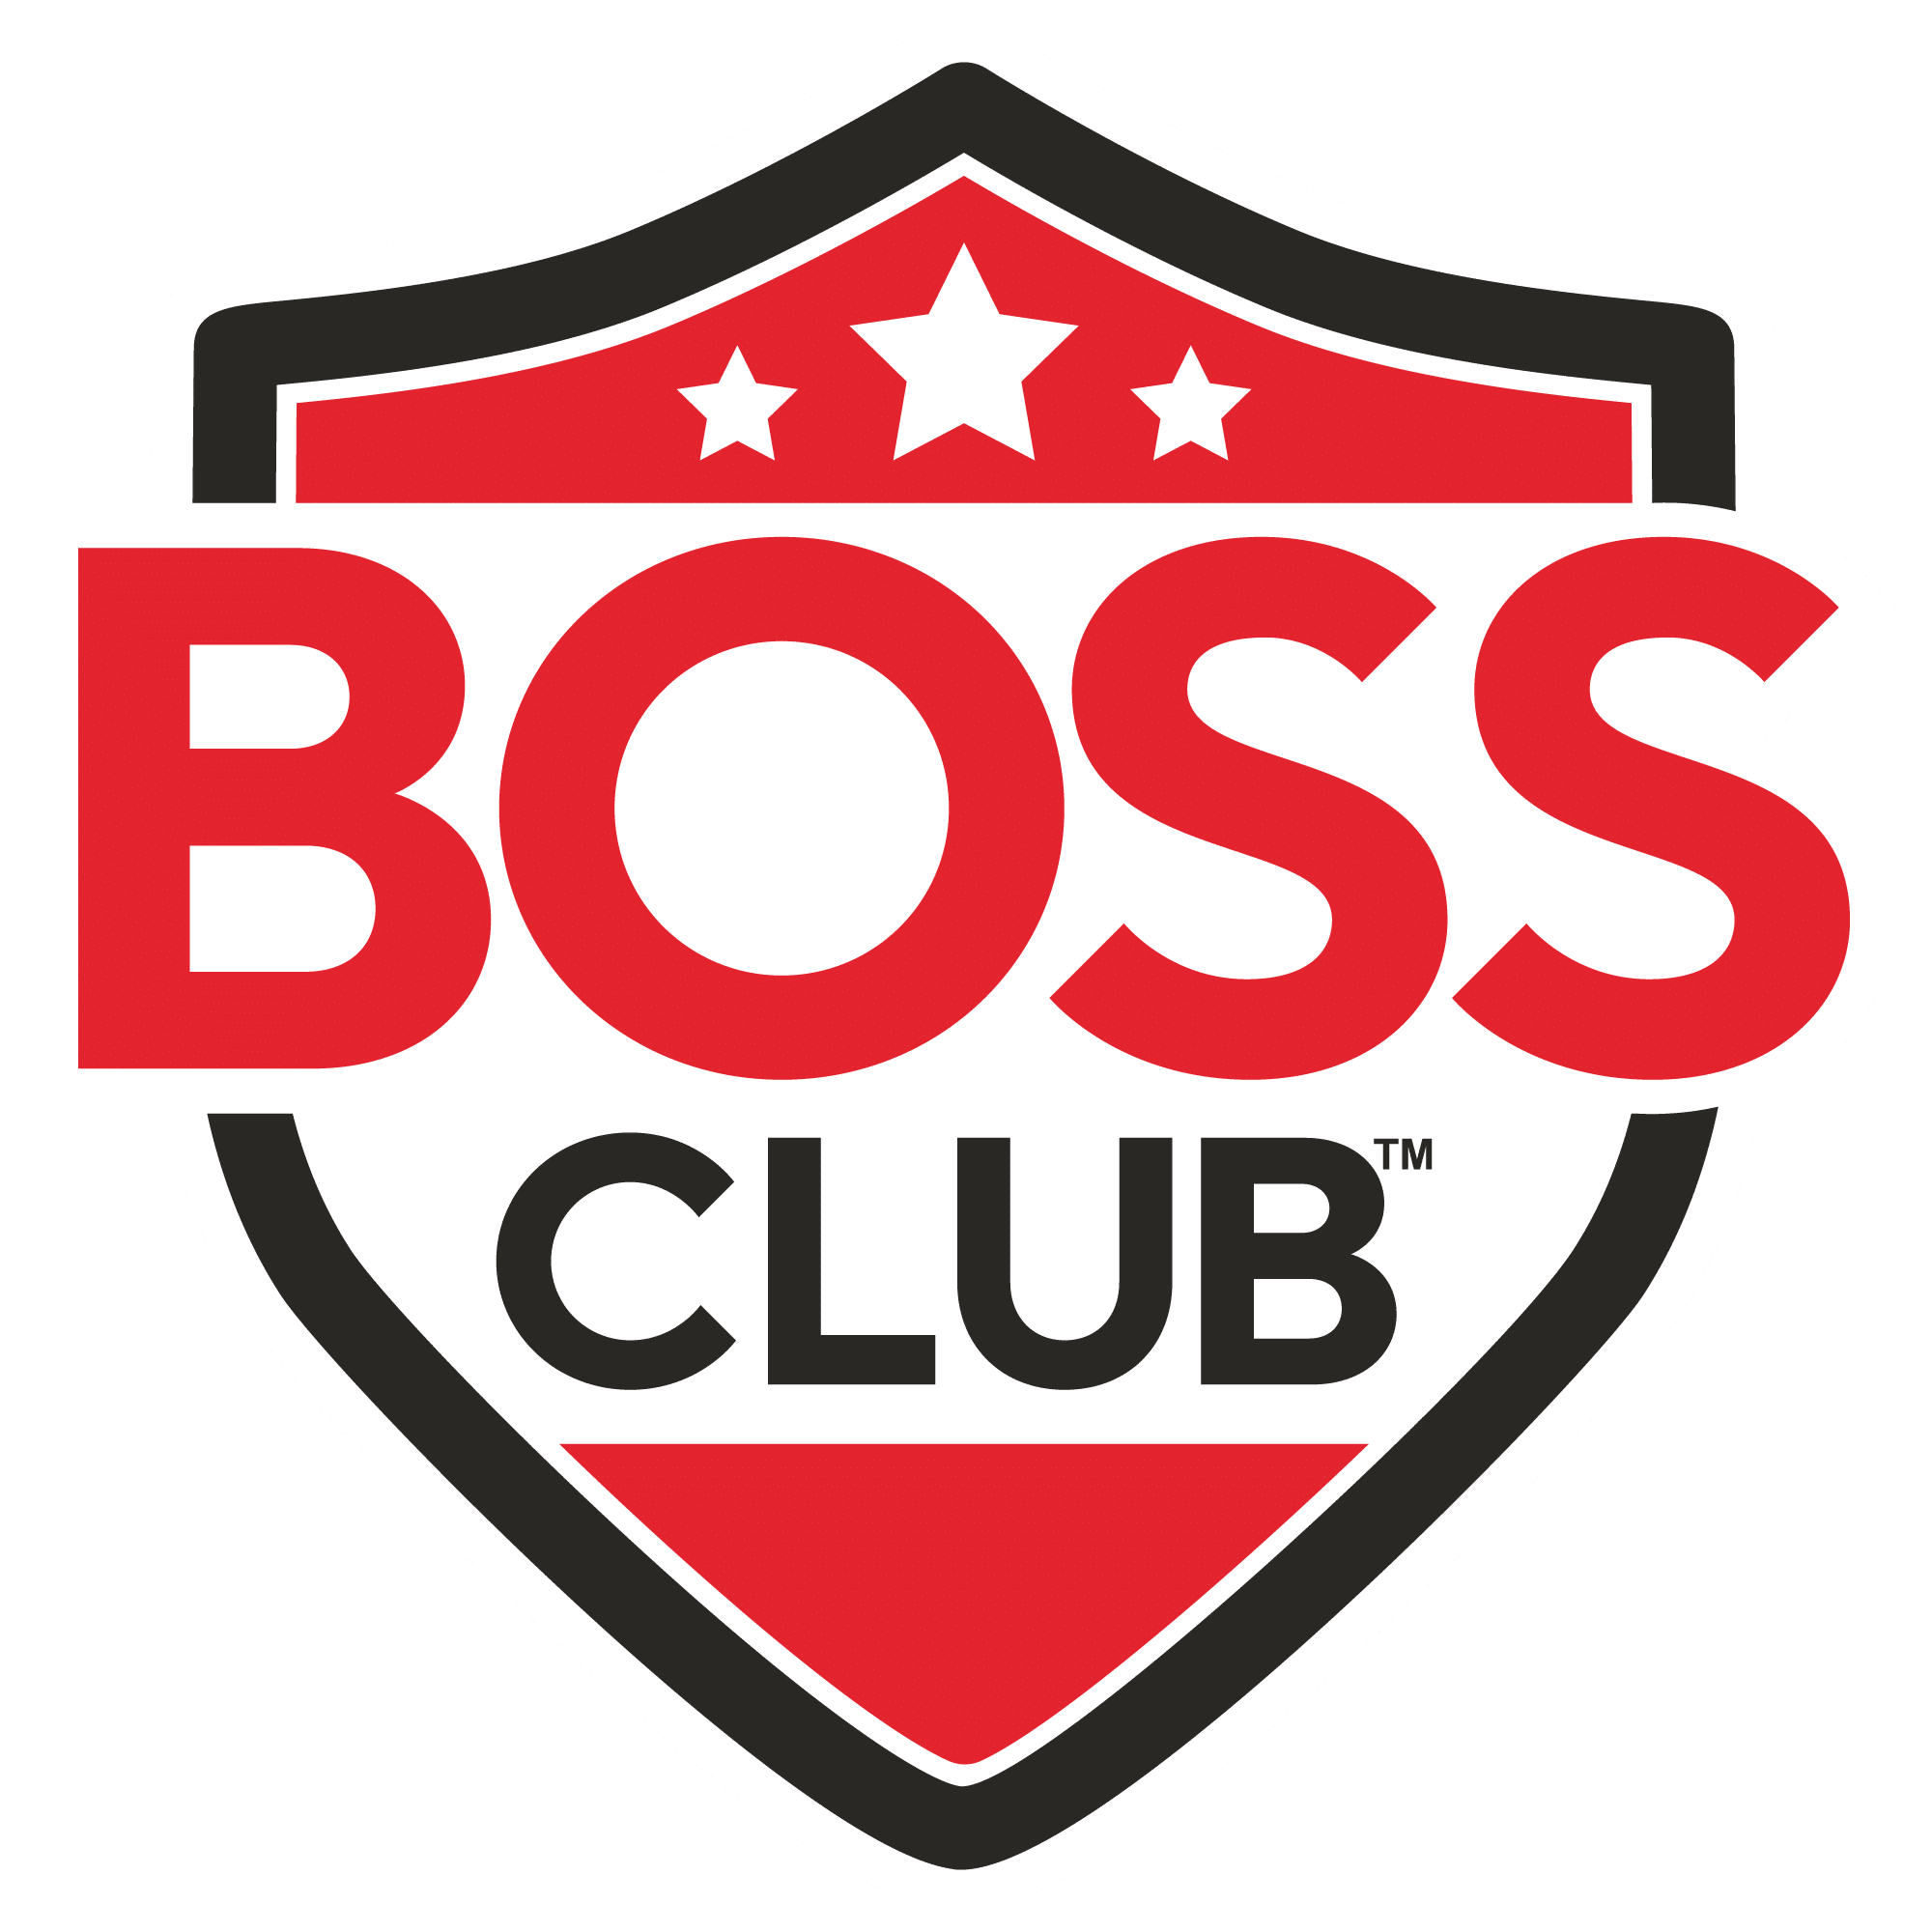 BOSS Club logo